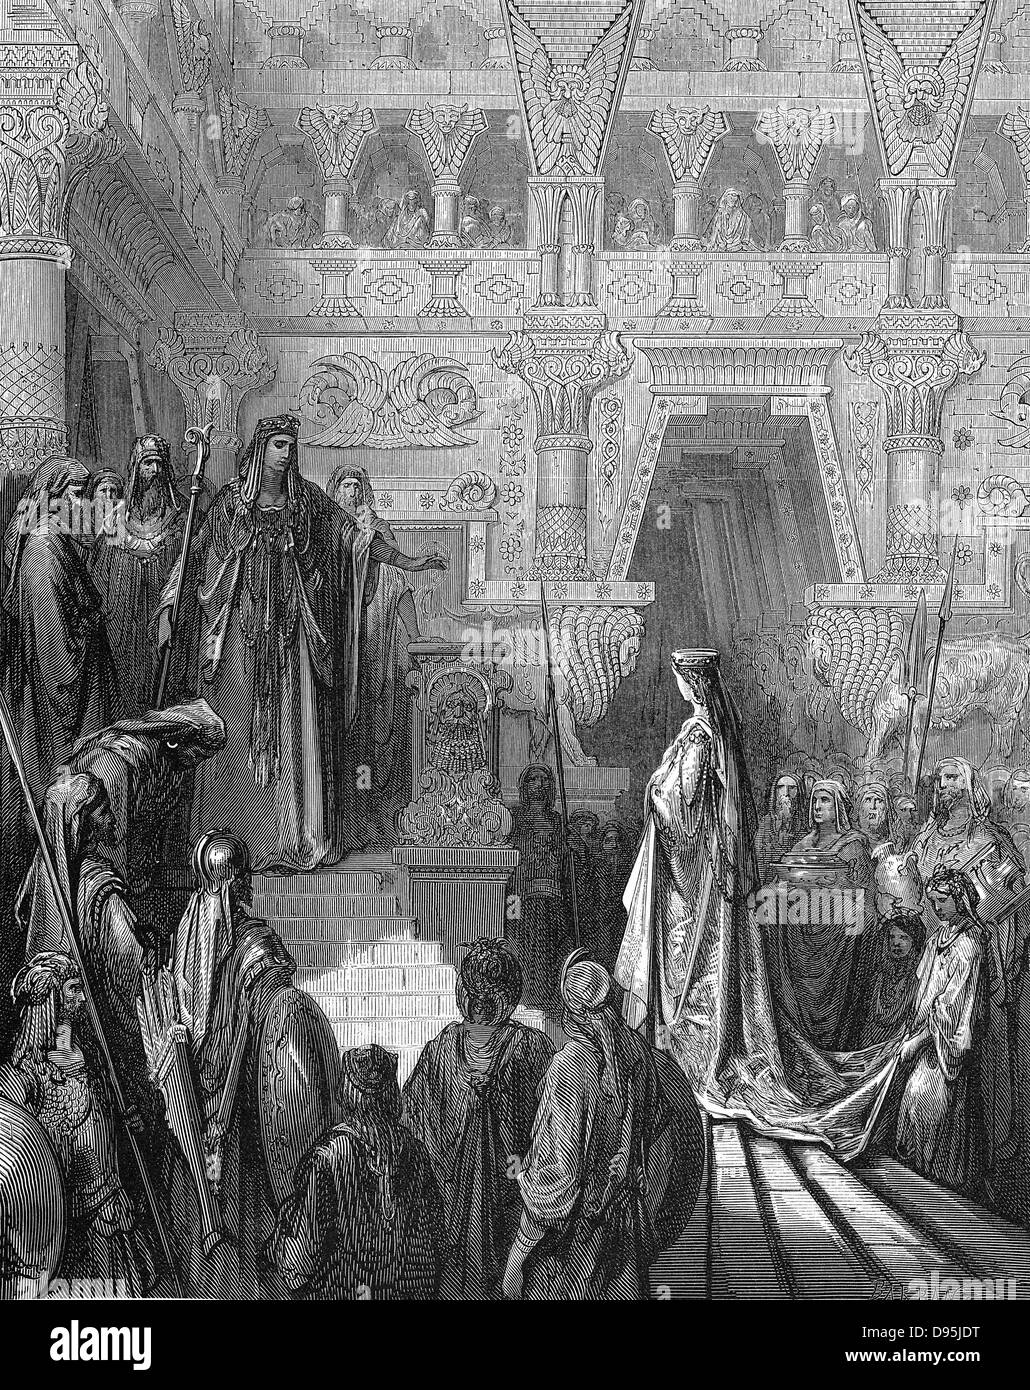 Le roi Salomon accueillir la Reine de Saba. I Rois 10:2. De Gustave Dore's illustrated "Bible" en 1865-1866. La gravure sur bois. Banque D'Images